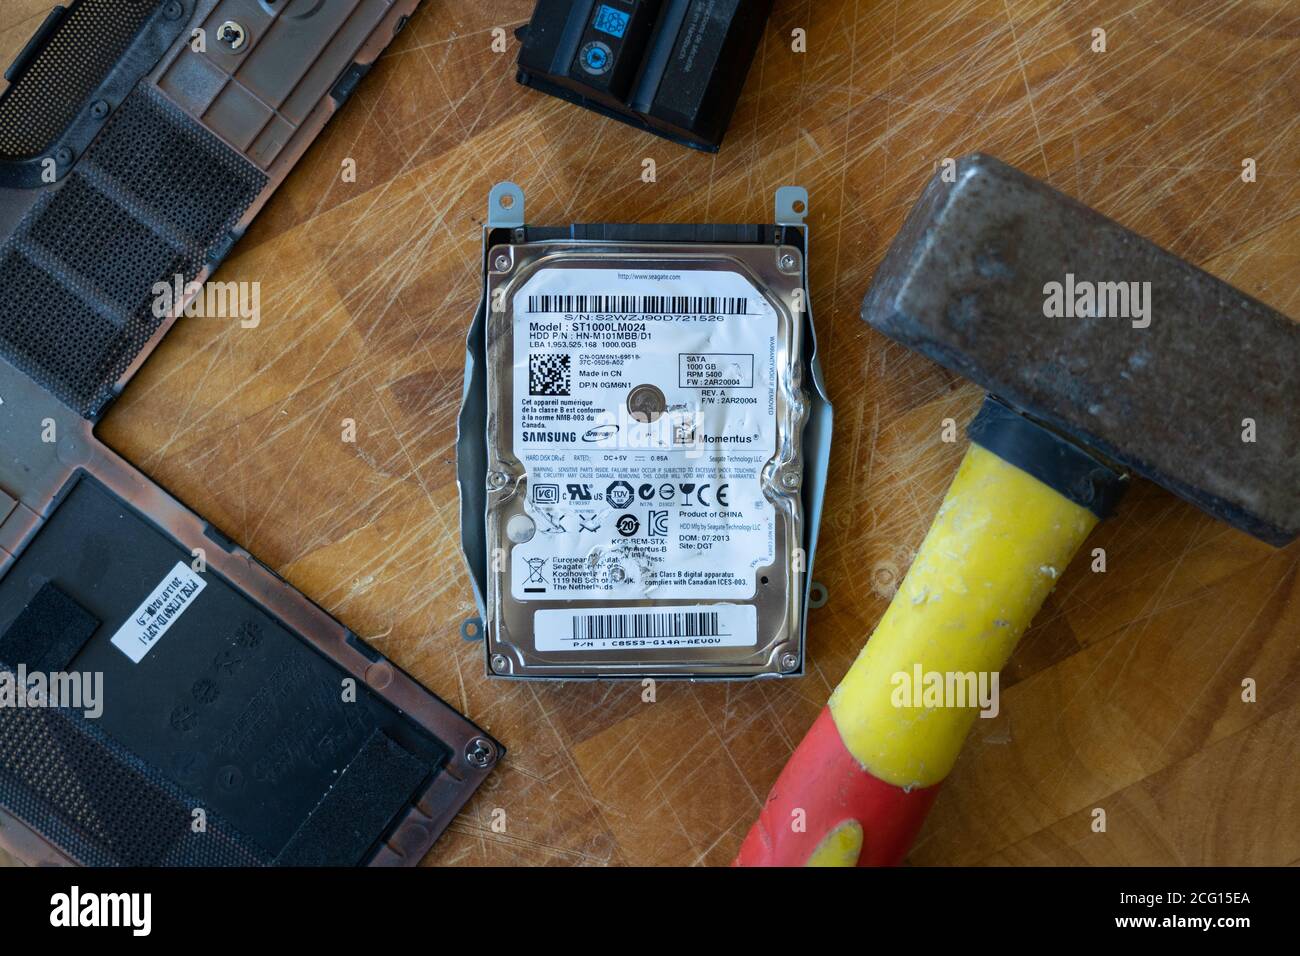 Ein Hammer, mit dem eine Festplatte (HDD) durch Hämmern zerstört wird. Thema: Datensicherheit personenbezogene Daten, Löschen, Löschen, Technologie, Wut, Frustration Stockfoto